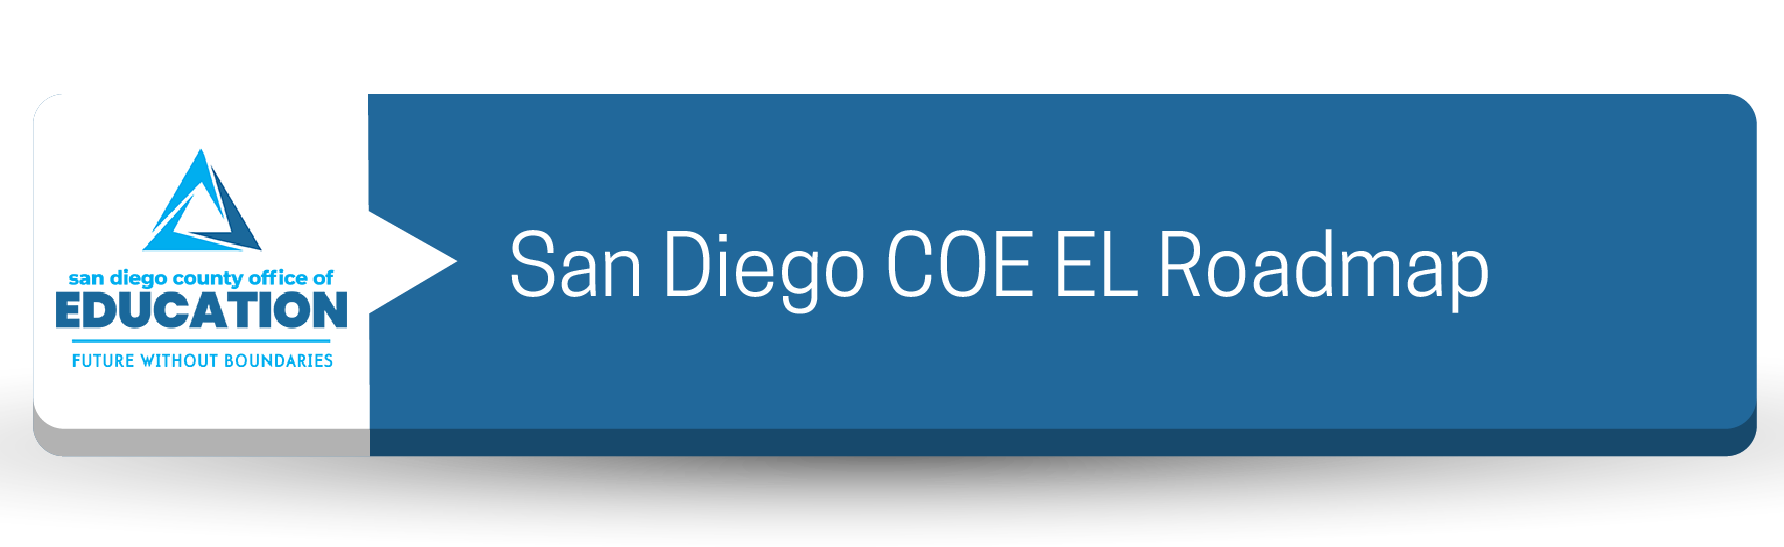 Botón de hoja de ruta del COE EL de San Diego